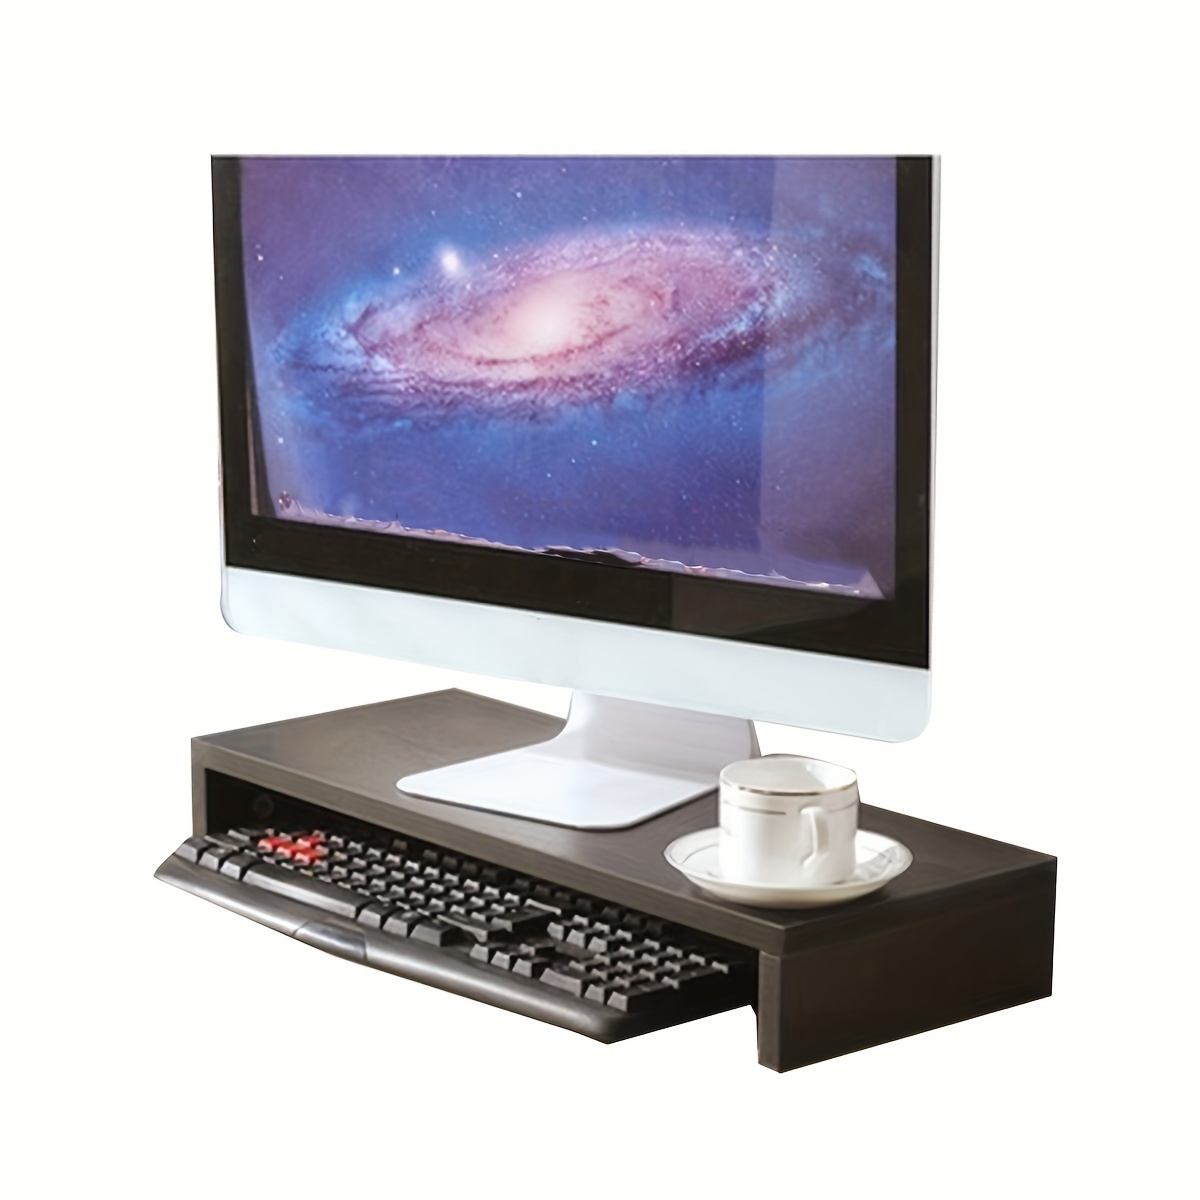  Soporte para monitor de madera, soporte industrial para  ordenador de sobremesa, estante organizador de escritorio marrón para PC,  portátil, pantalla, Prinster, MacBook, portátil, juego de 2 : Electrónica